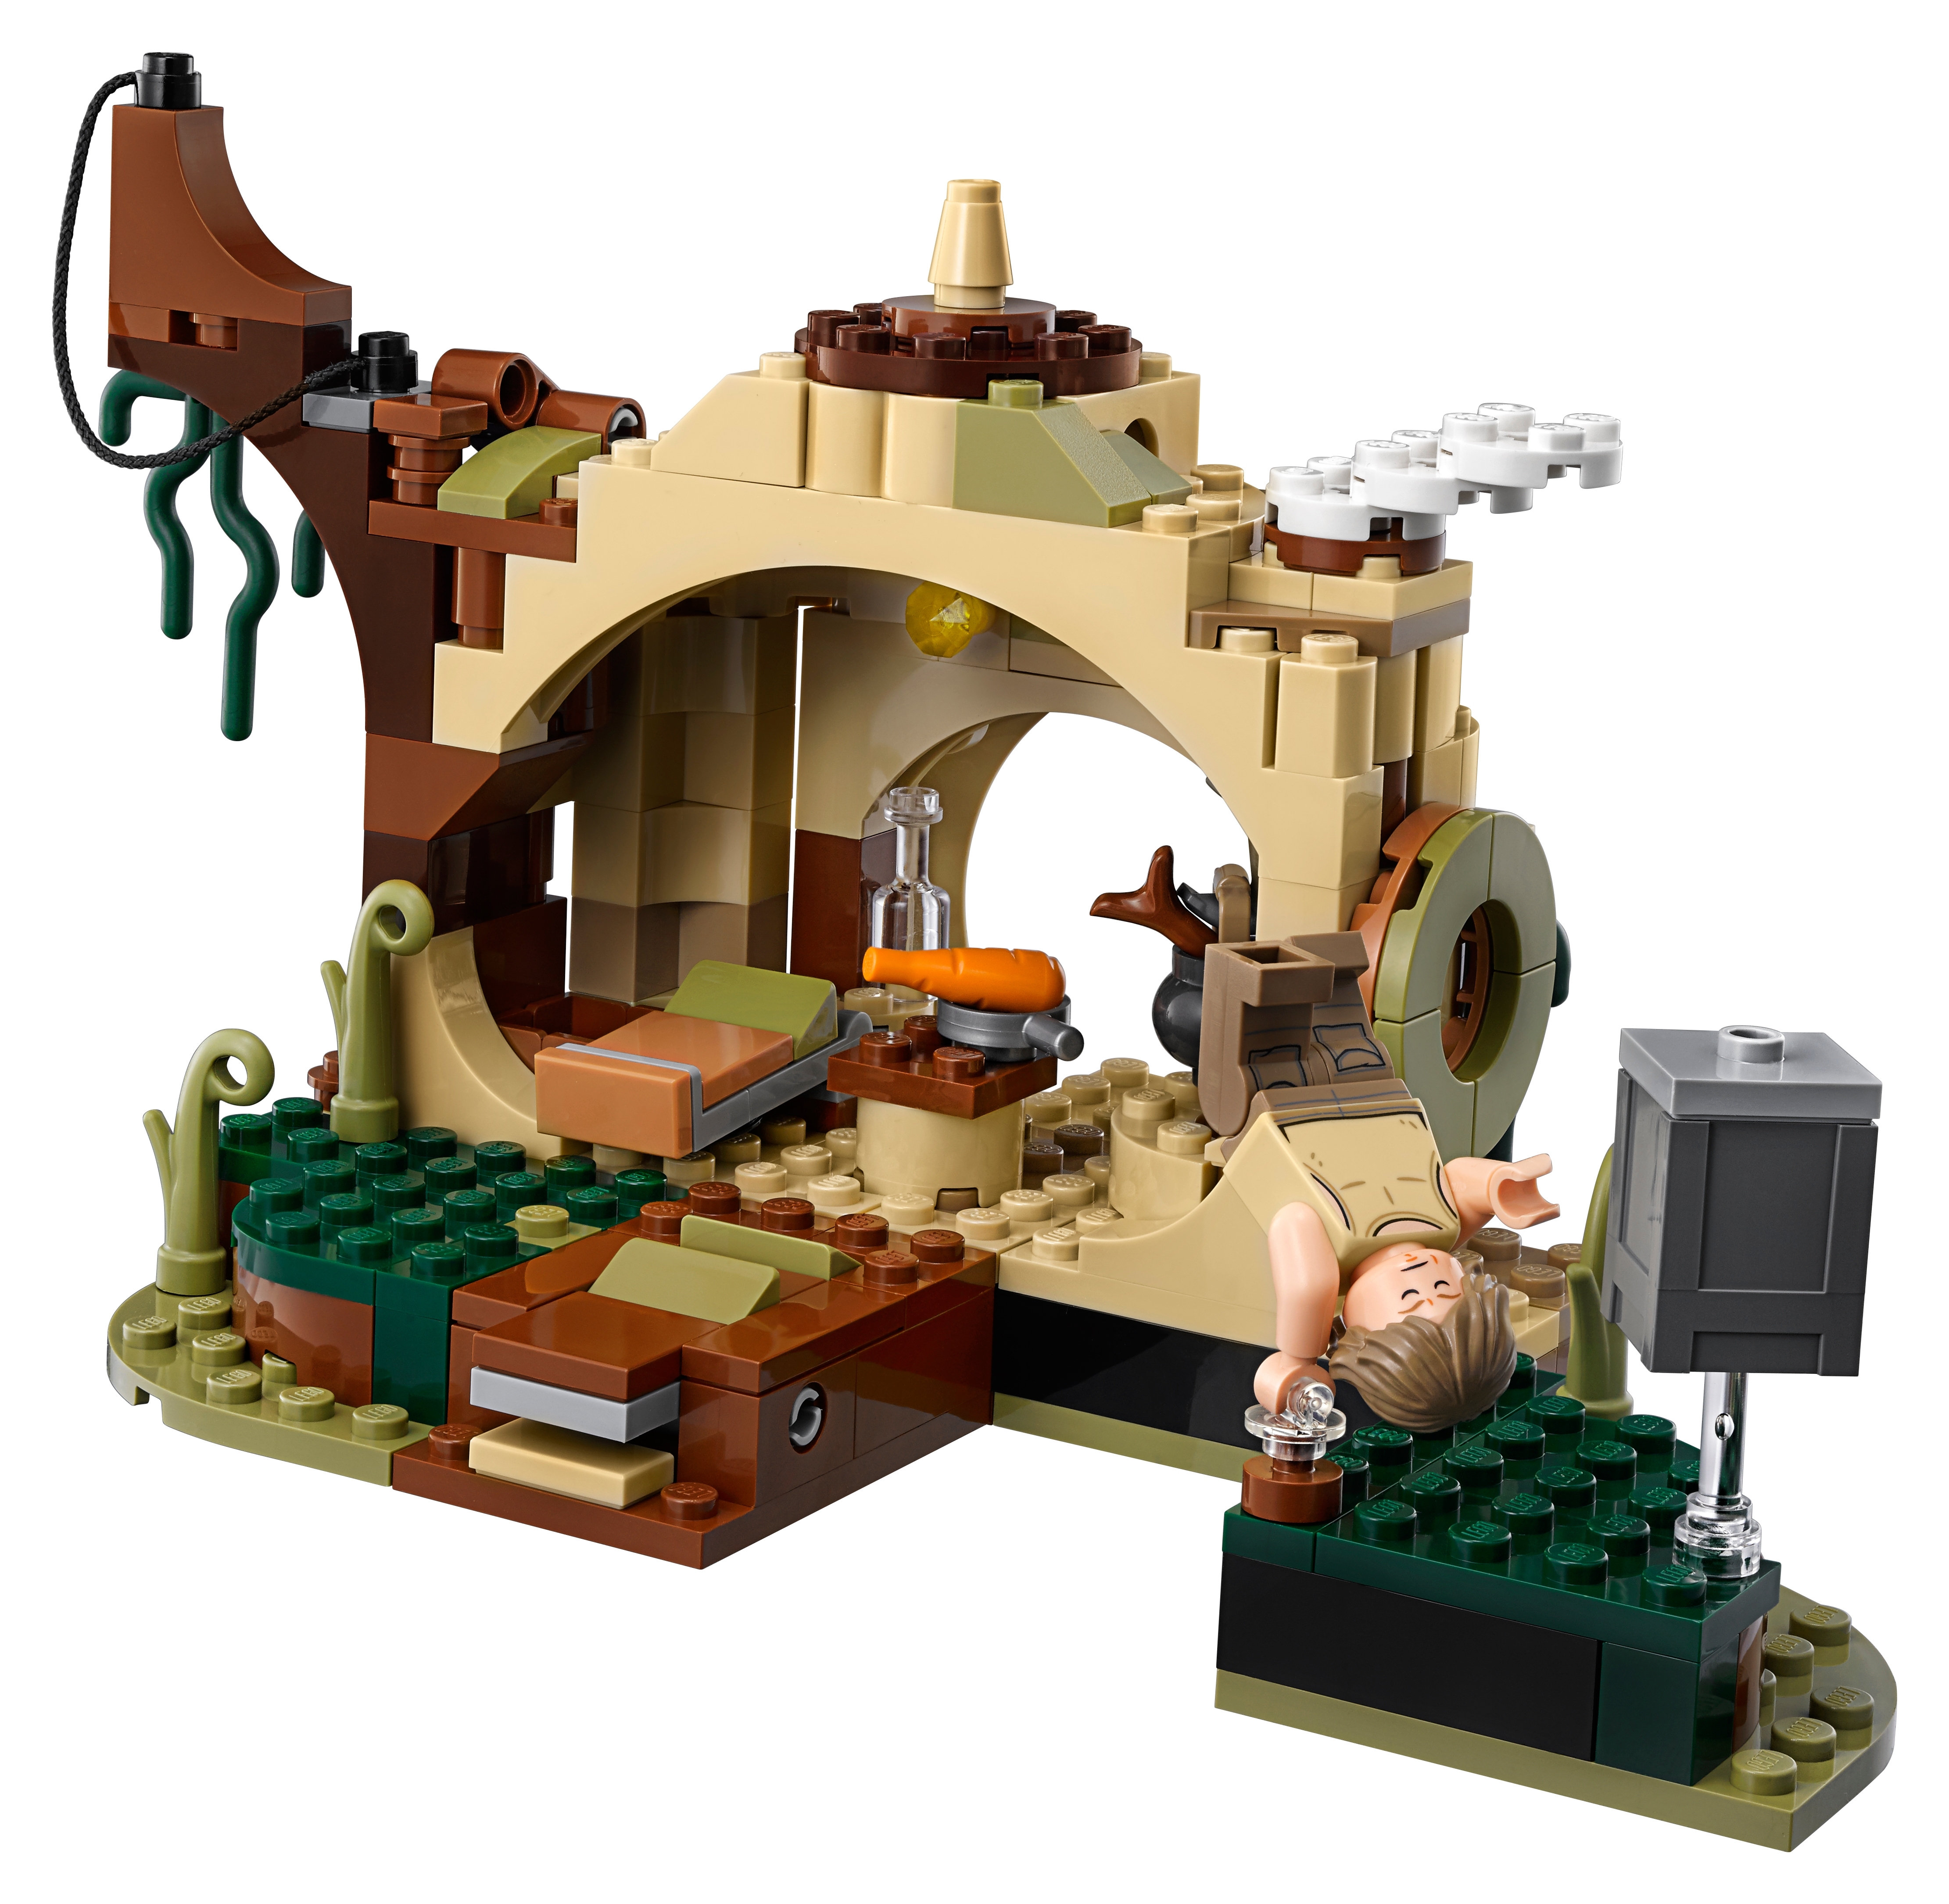 yoda's hut lego set